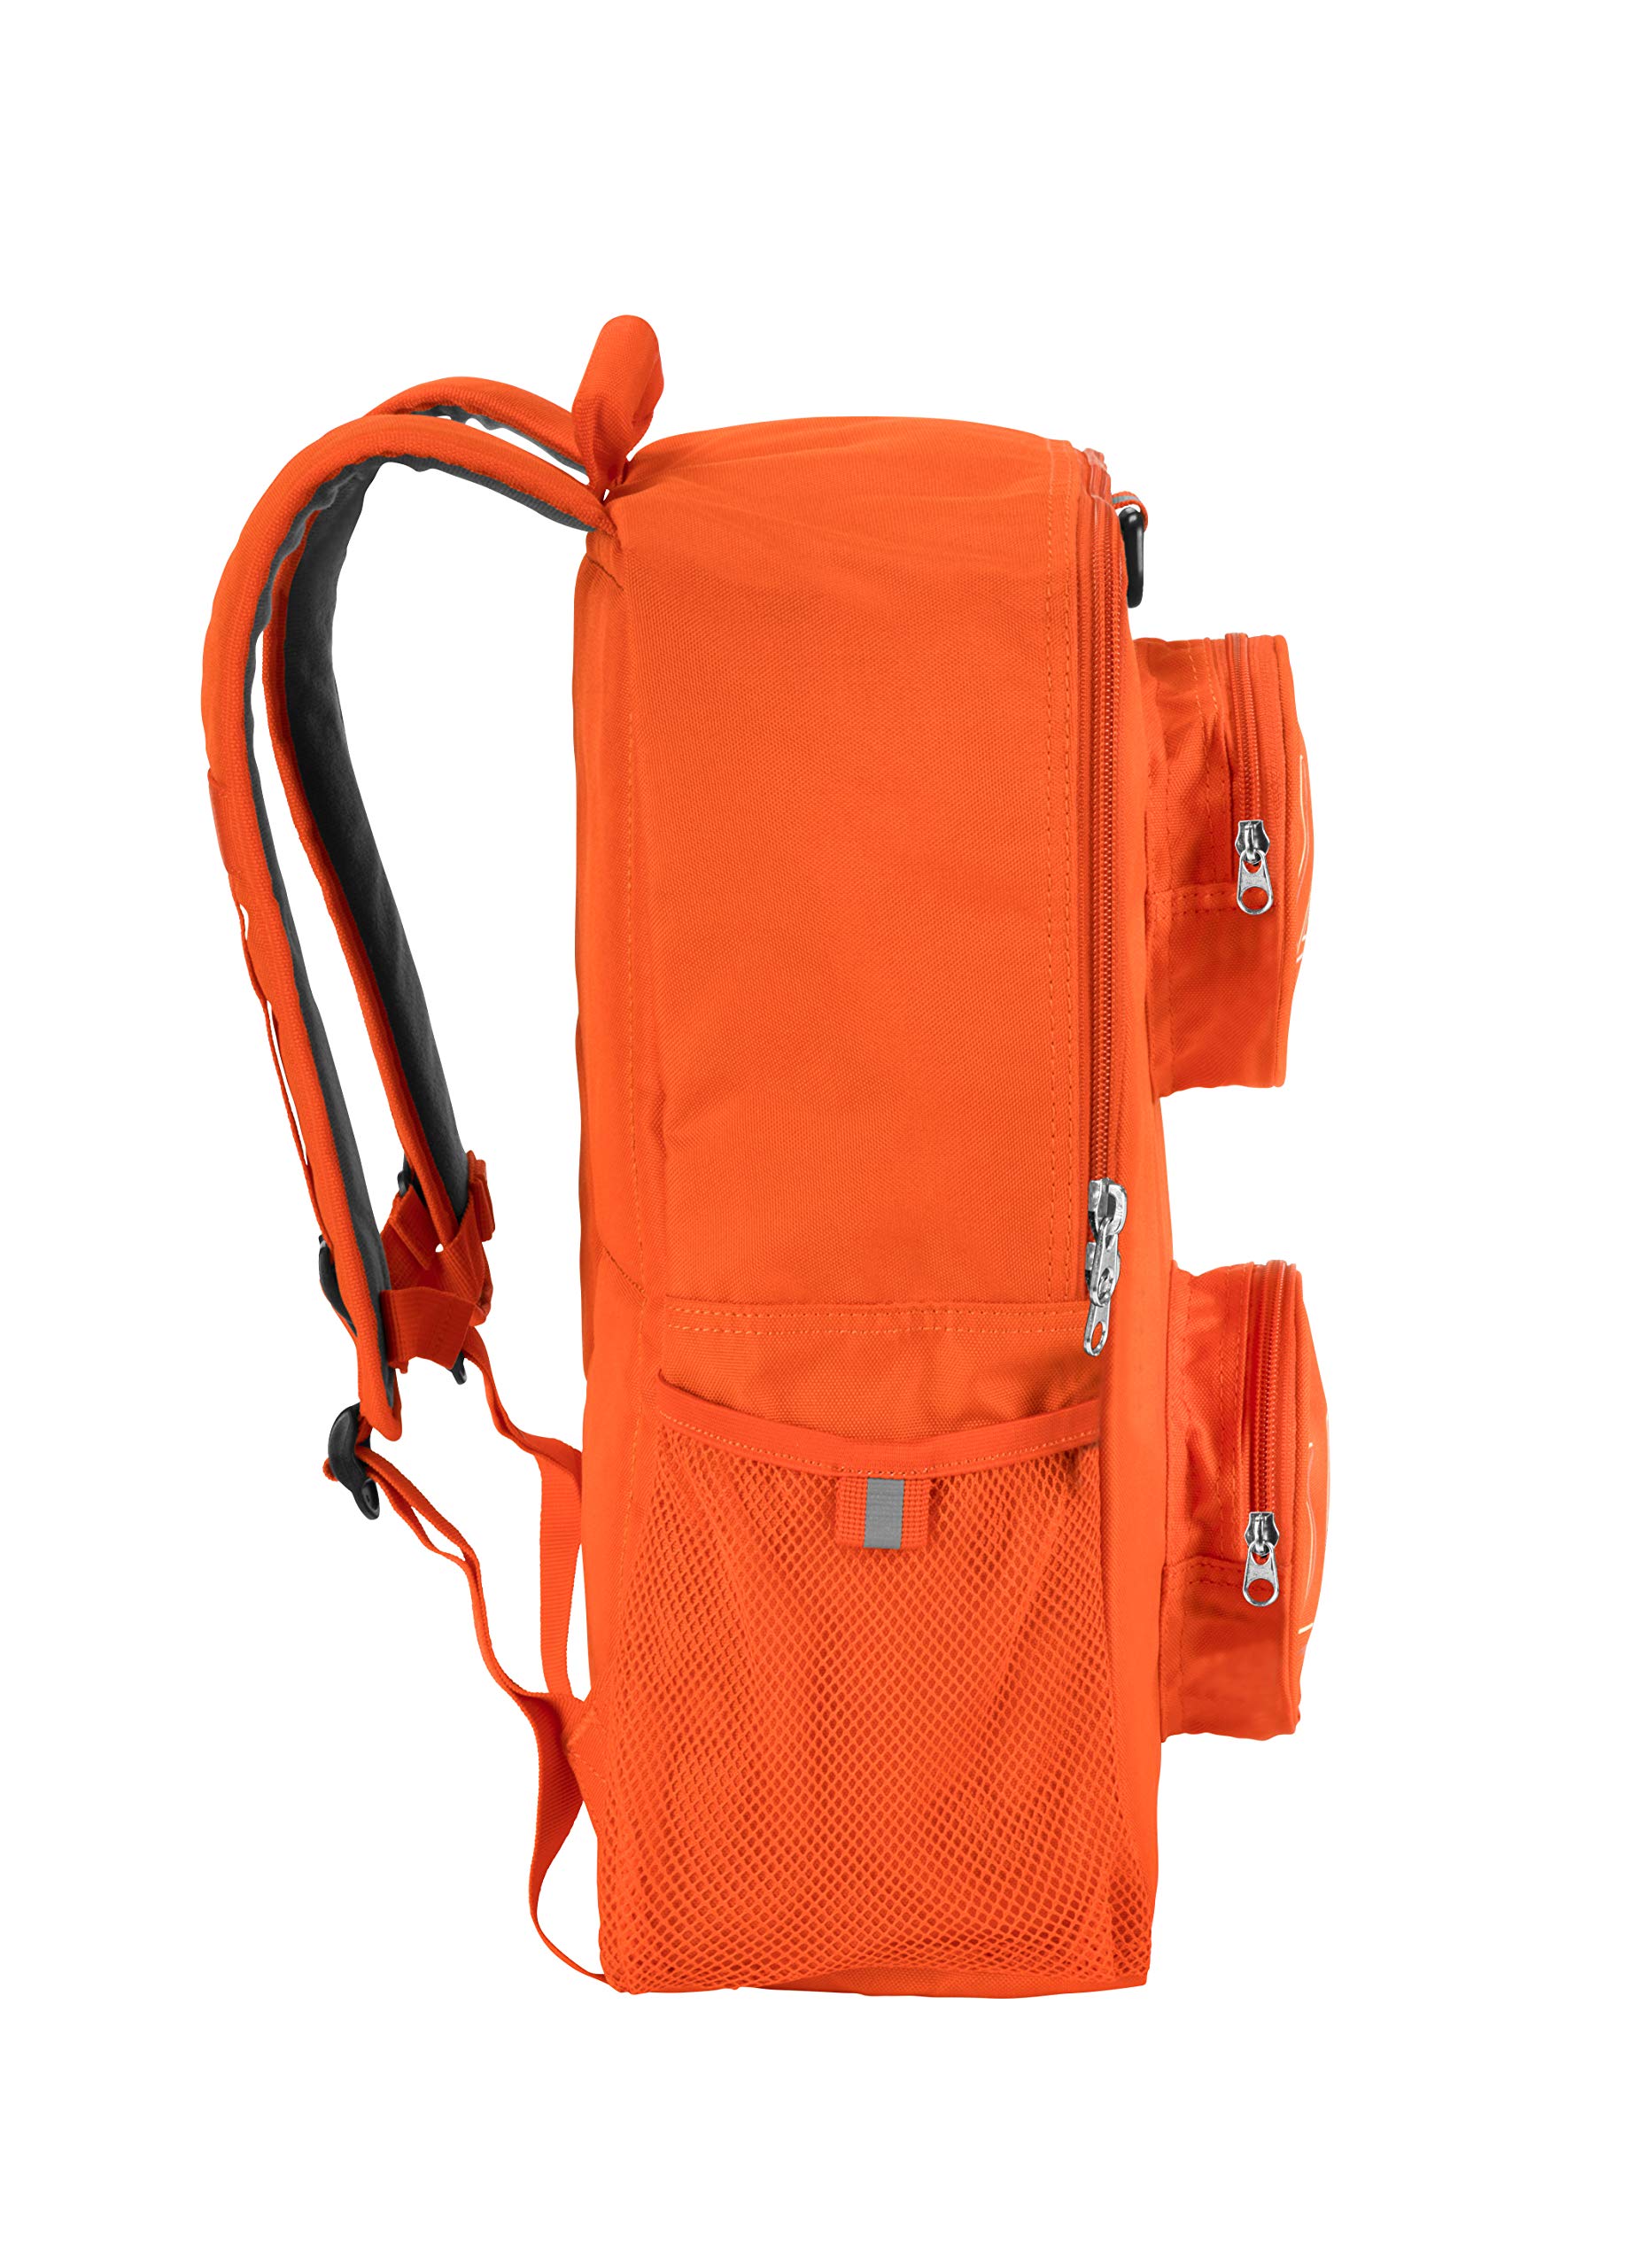 LEGO Brick Backpack - Orange